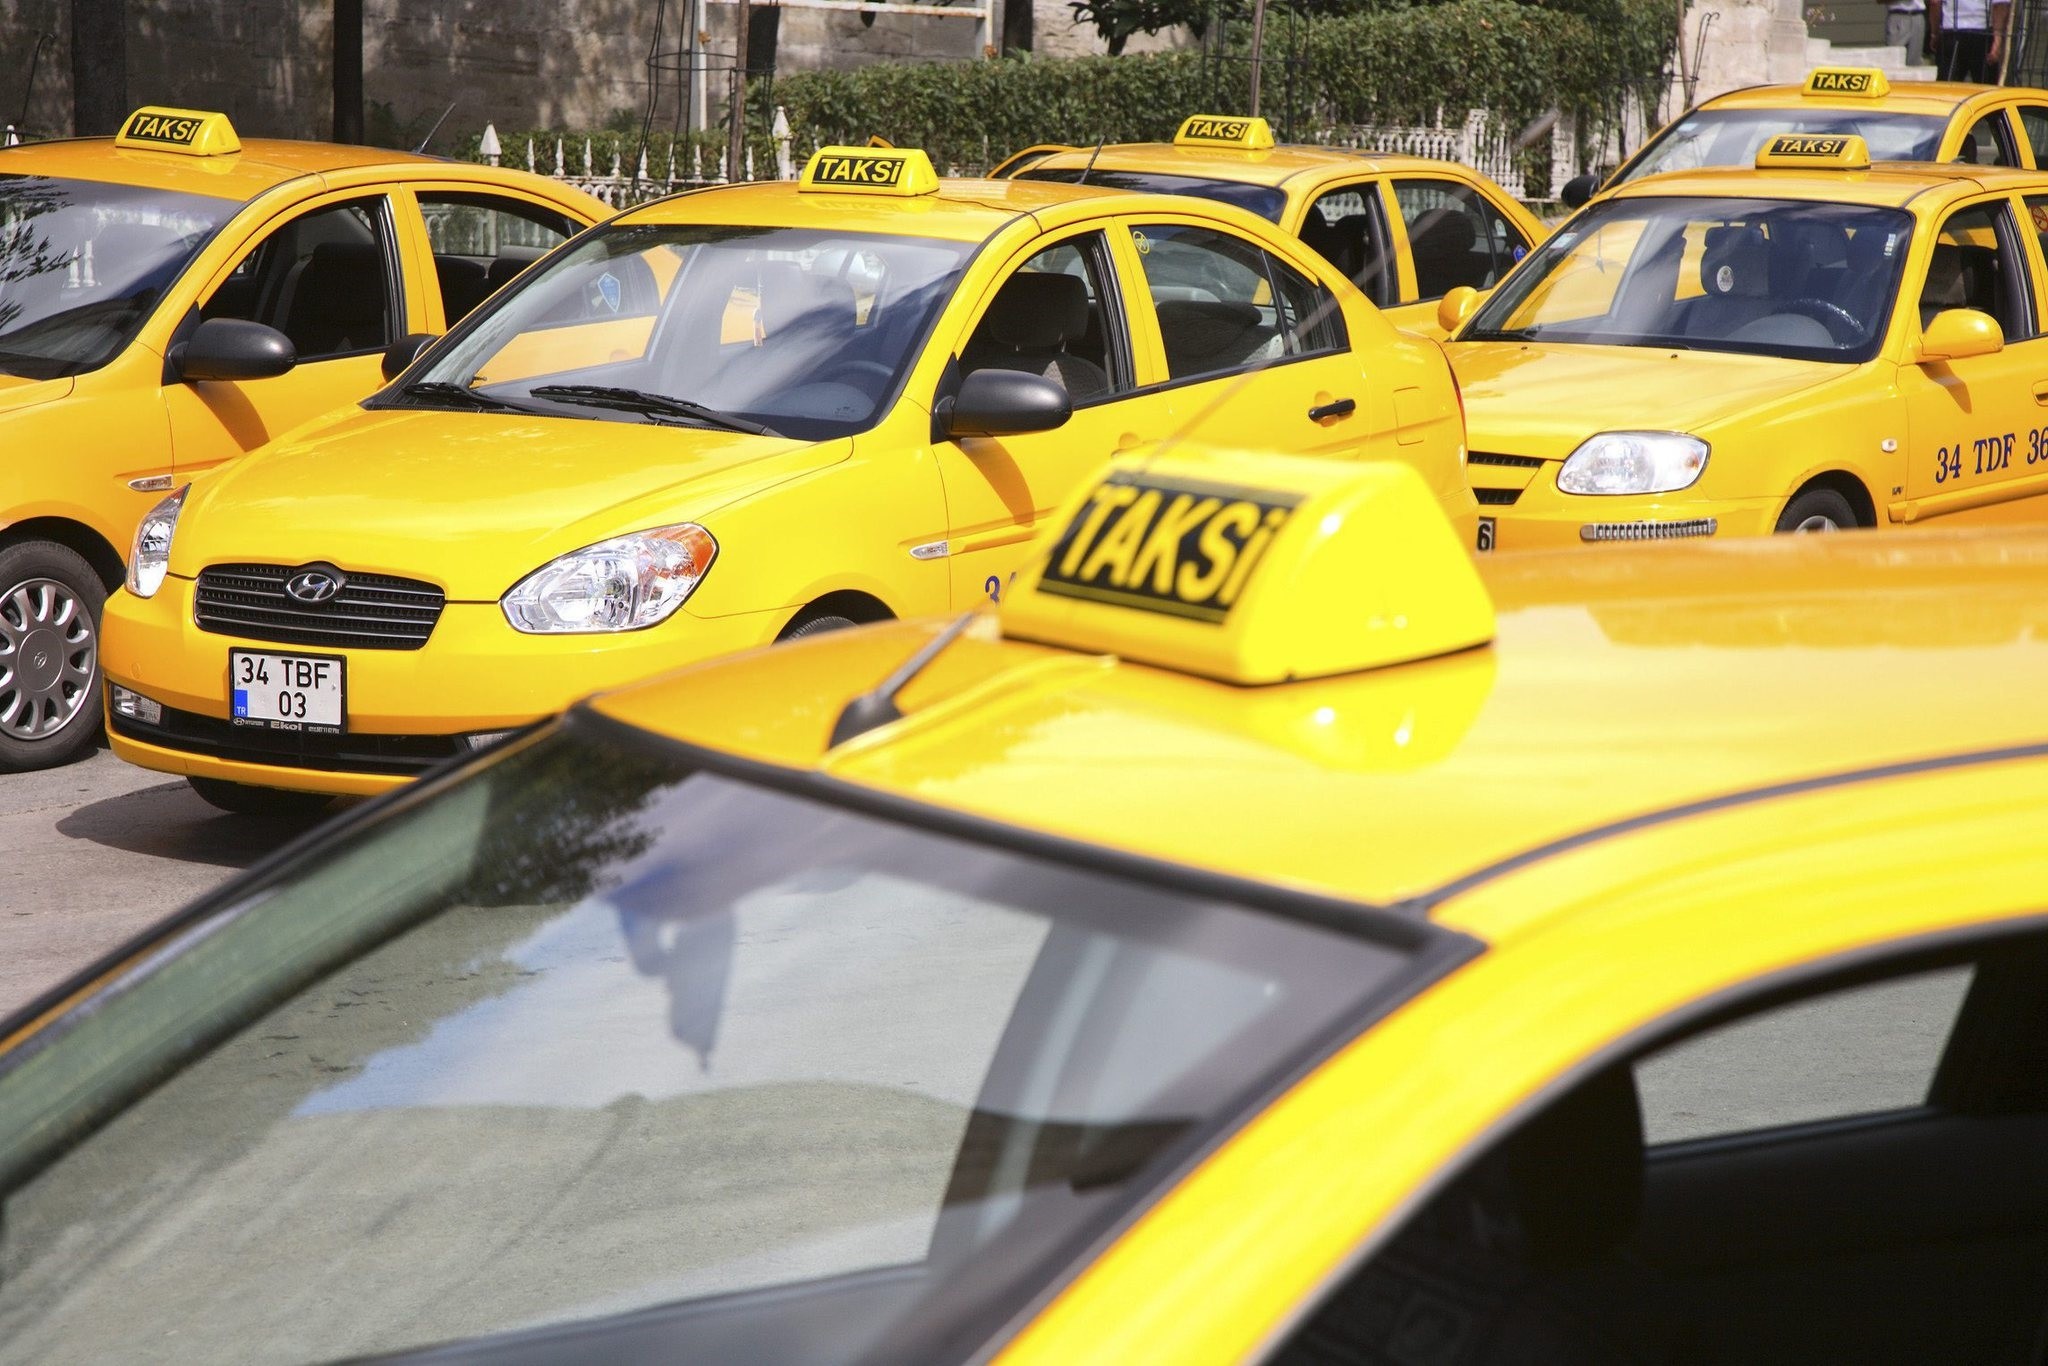 12 такси 3 зеленых 6 желтых. Такси. Такси в Стамбуле. Такси в Турции. Стамбульское такси.